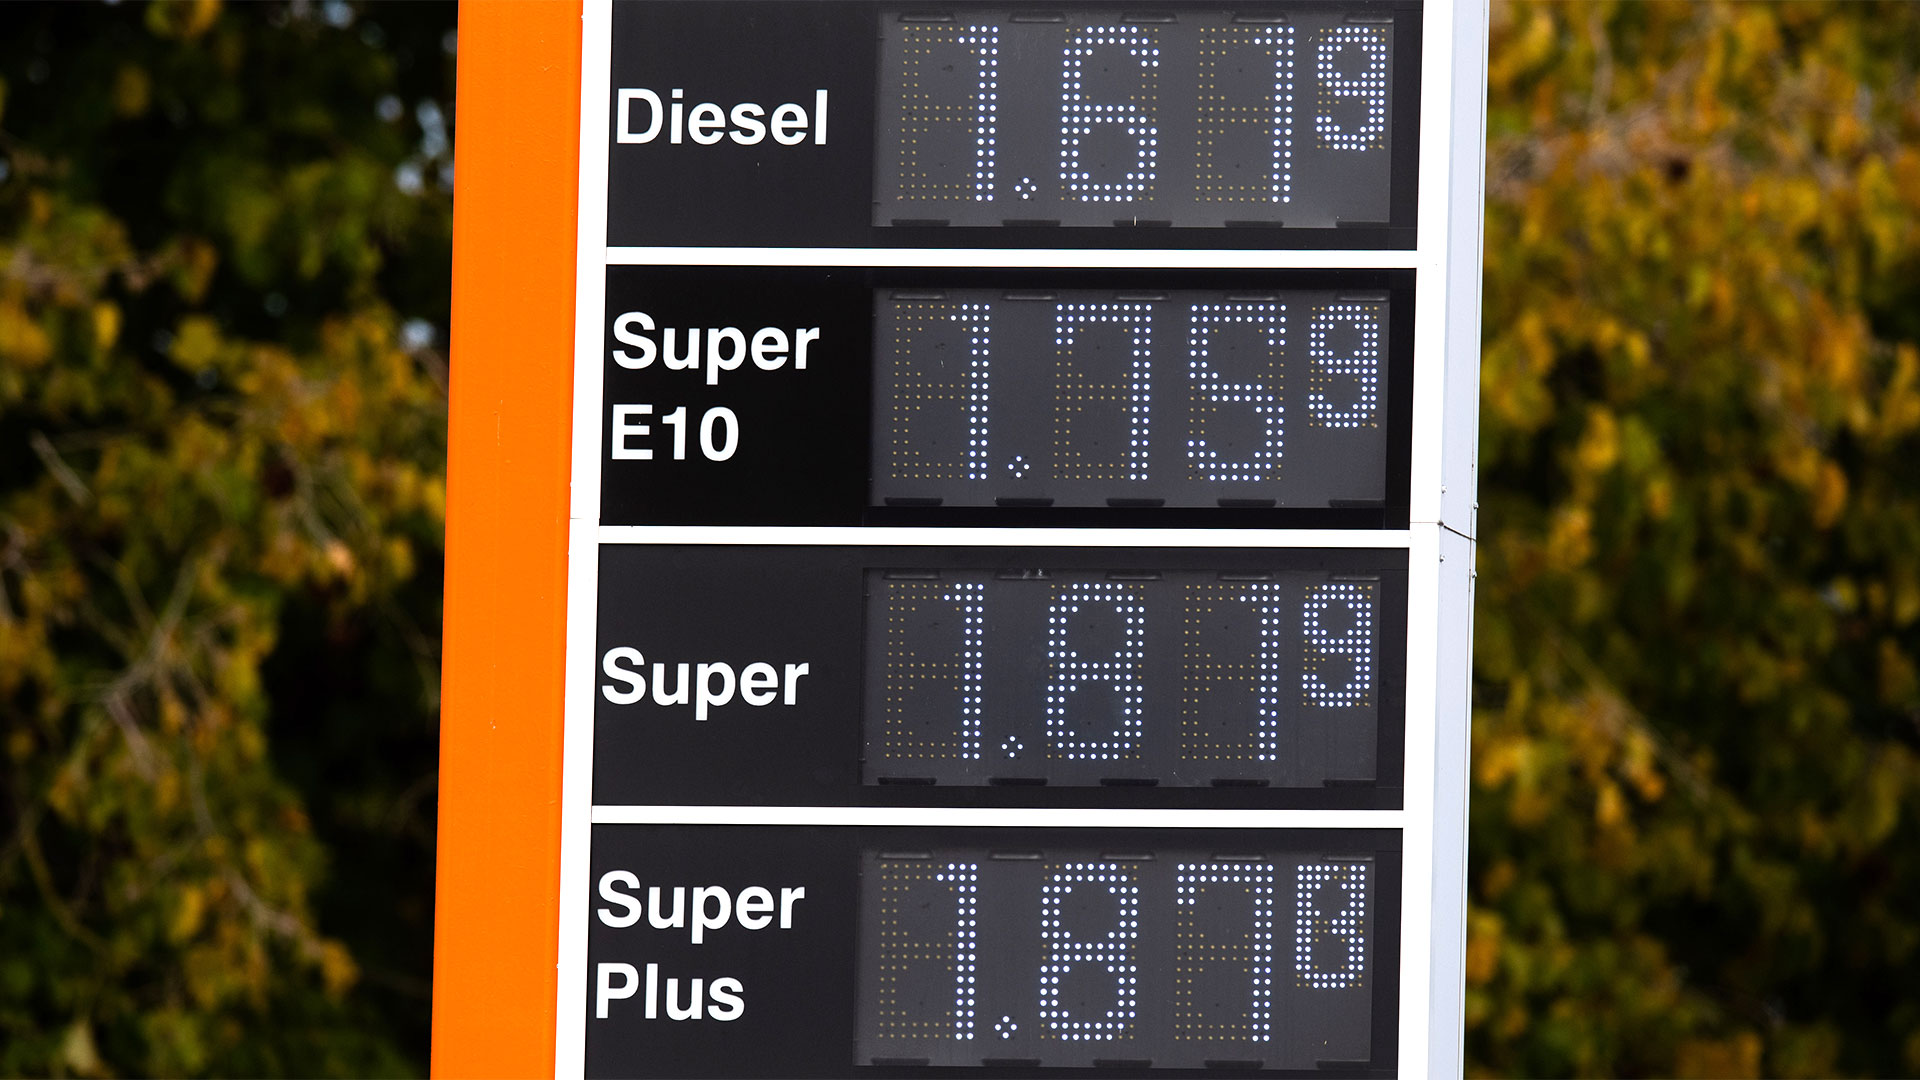 Benzinpreisanzeige an einer Tankstelle | picture alliance/dpa